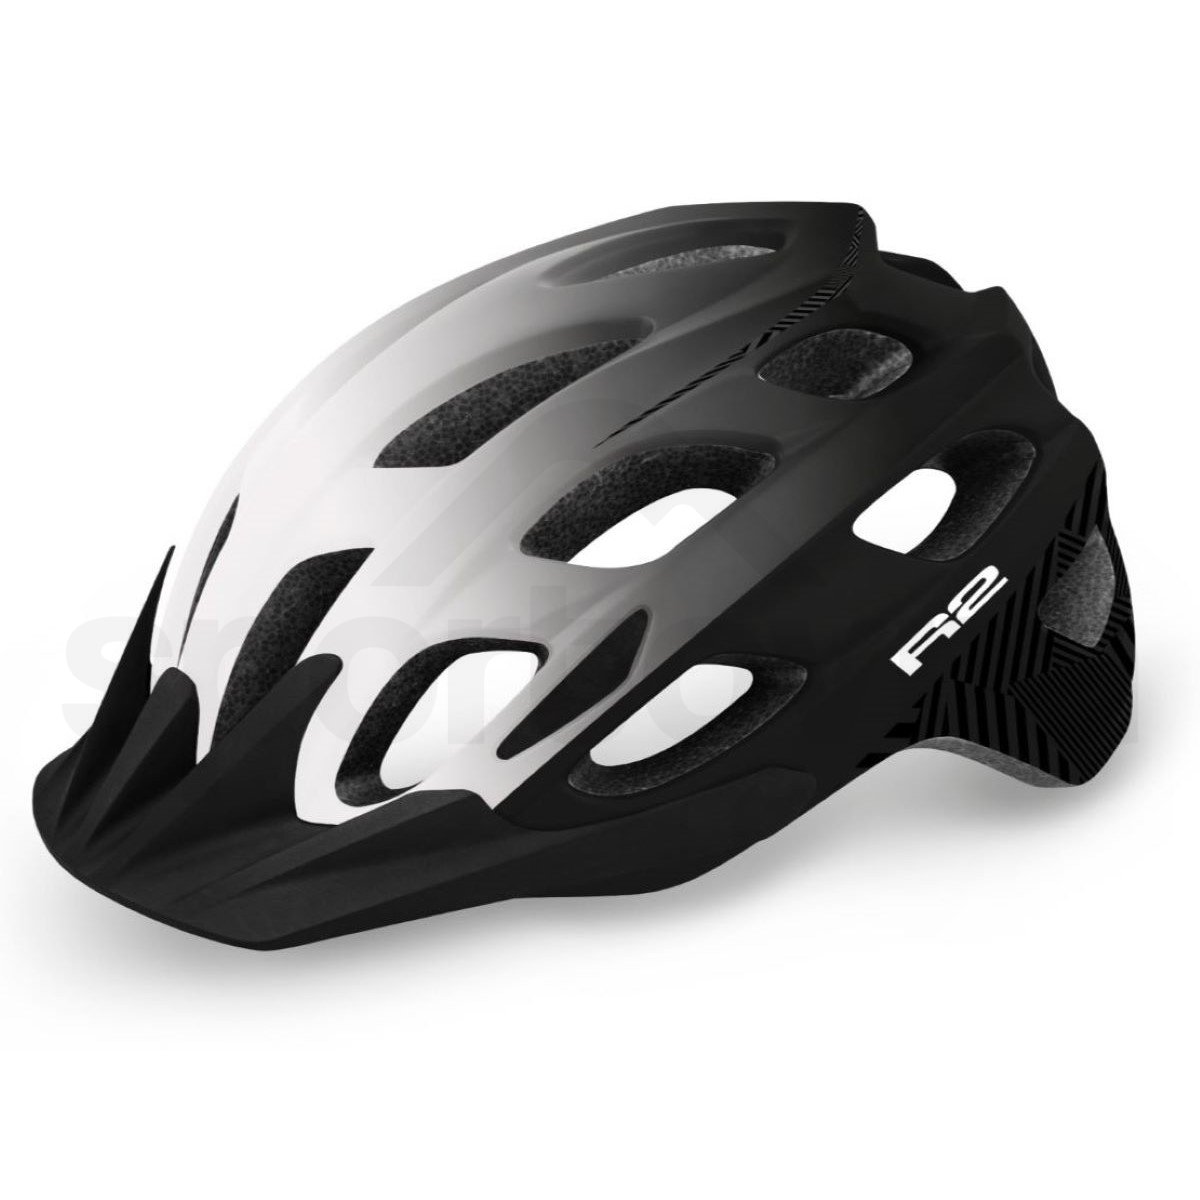 Cyklo helma R2 CLIFF- bílá/černá